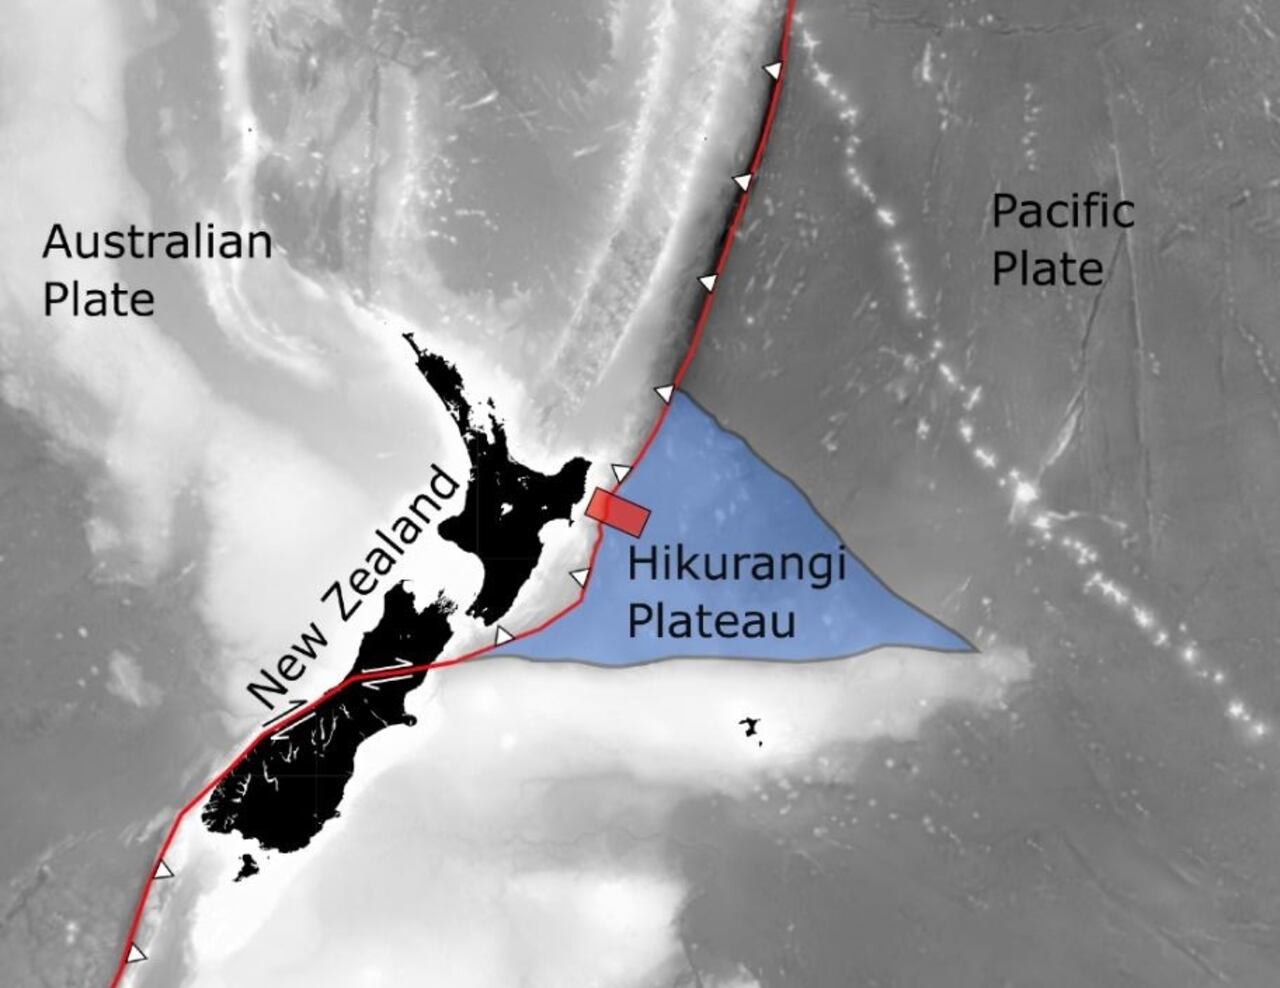 La meseta de Hikurangi es un vestigio de una serie de erupciones volcánicas épicas que comenzaron hace 125 millones de años en el Océano Pacífico.